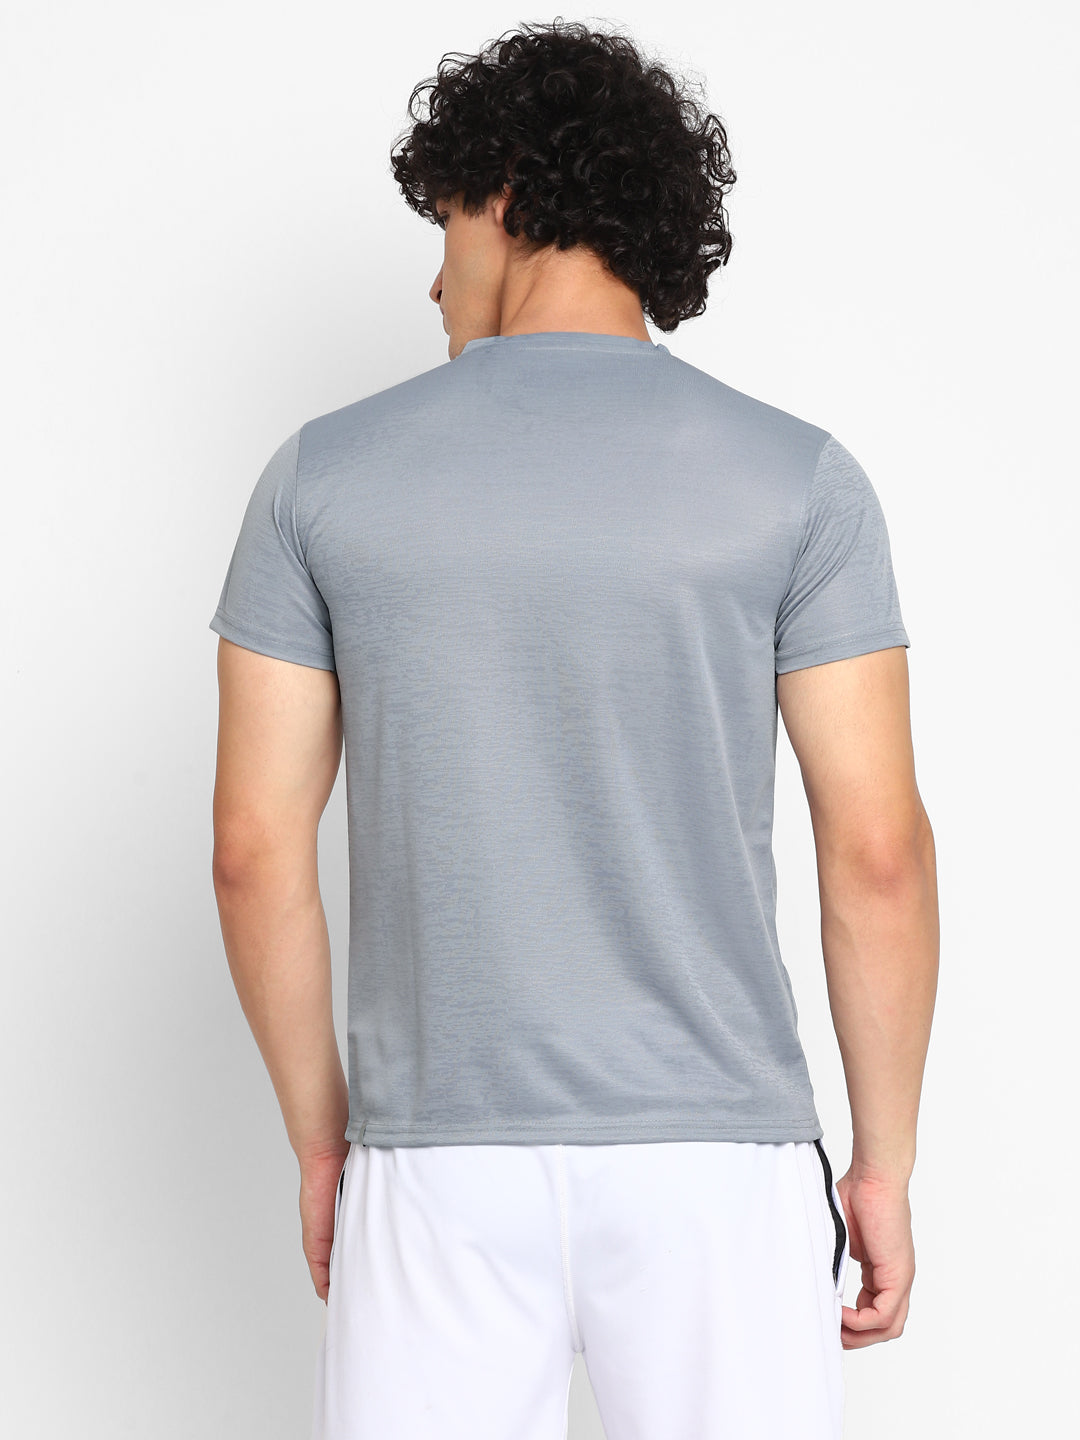 V Neck Sports T-Shirt for Men - Grey Jaquard (No Exchange No Return)